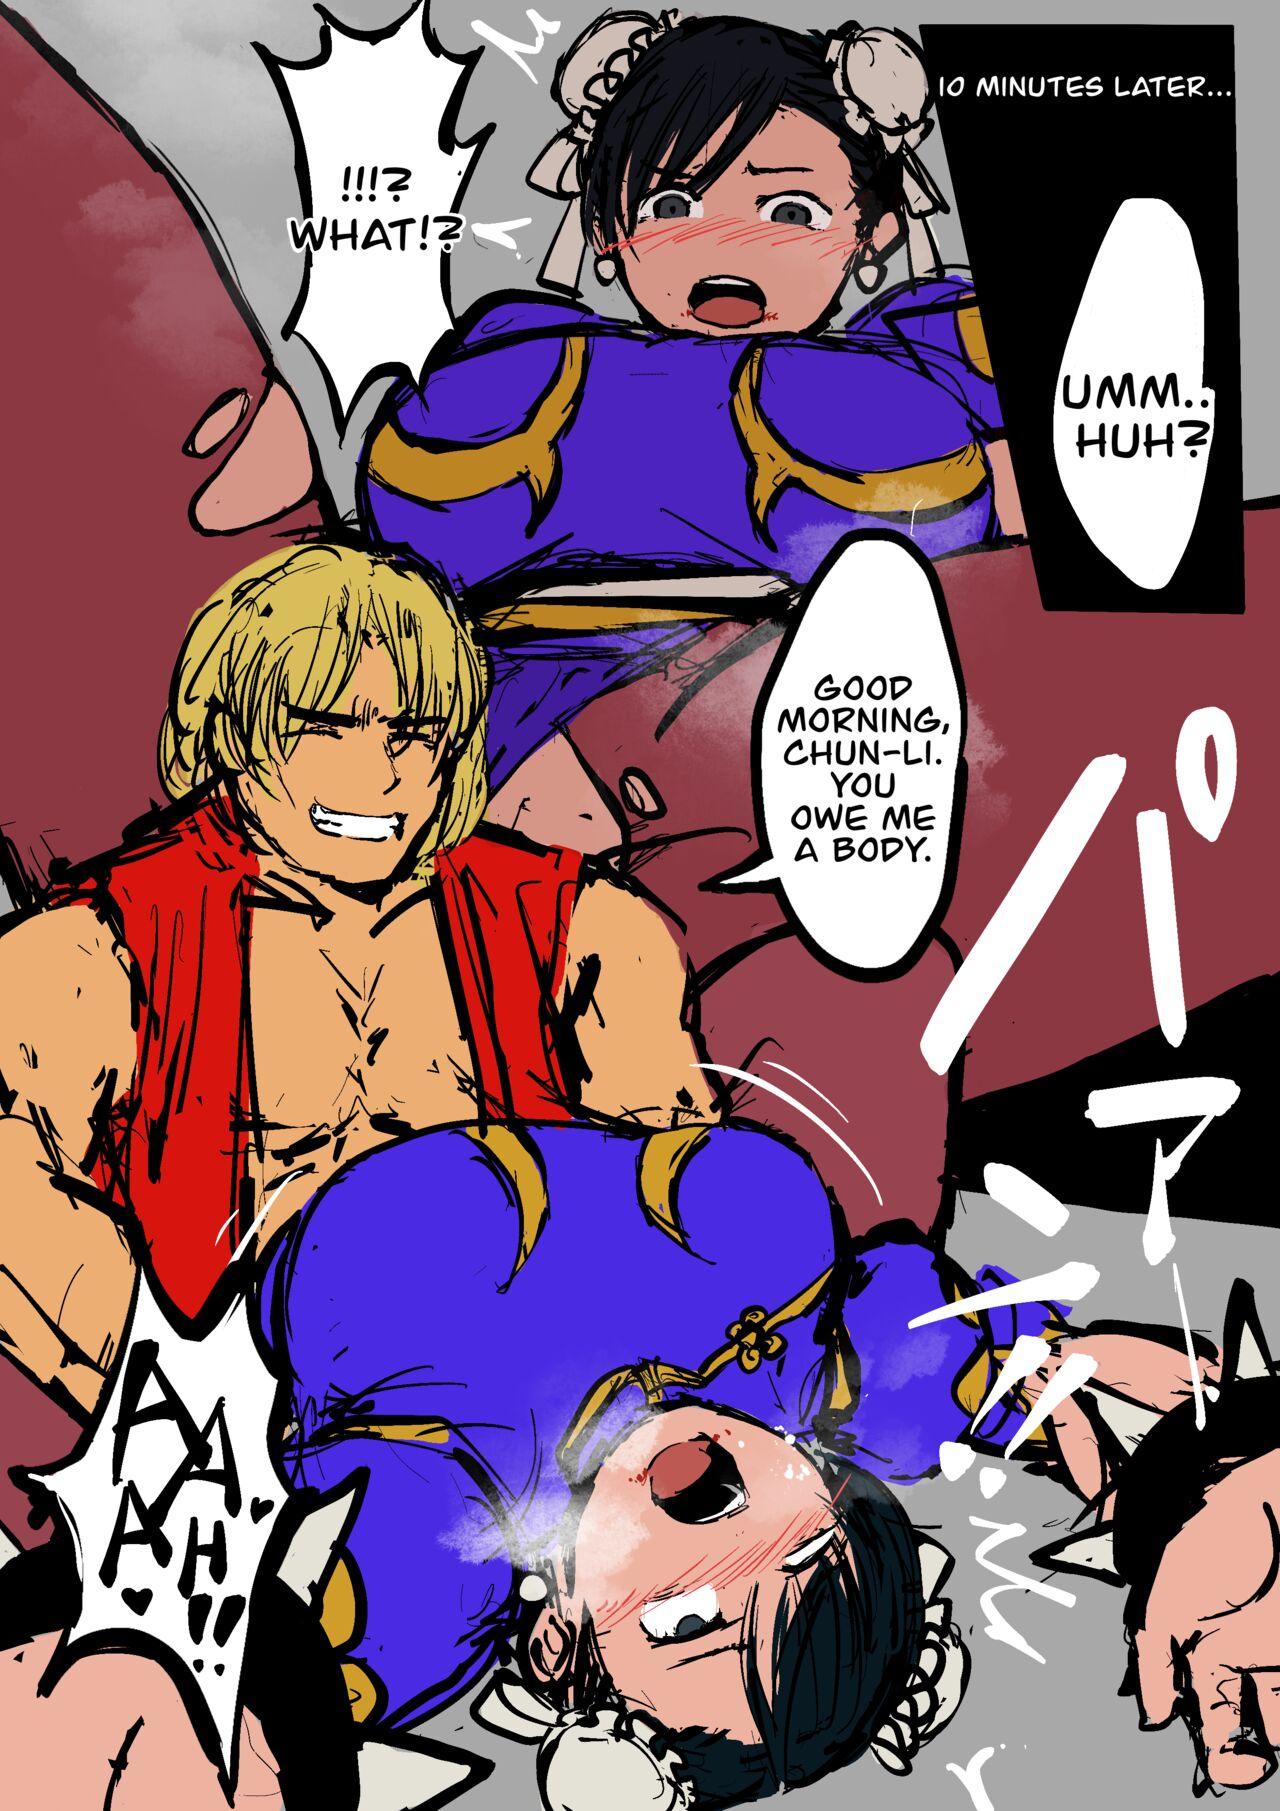 [Sanman-Drill] Chun-Li VS Ken Masters #1-2 (Street Fighter) [English] 10